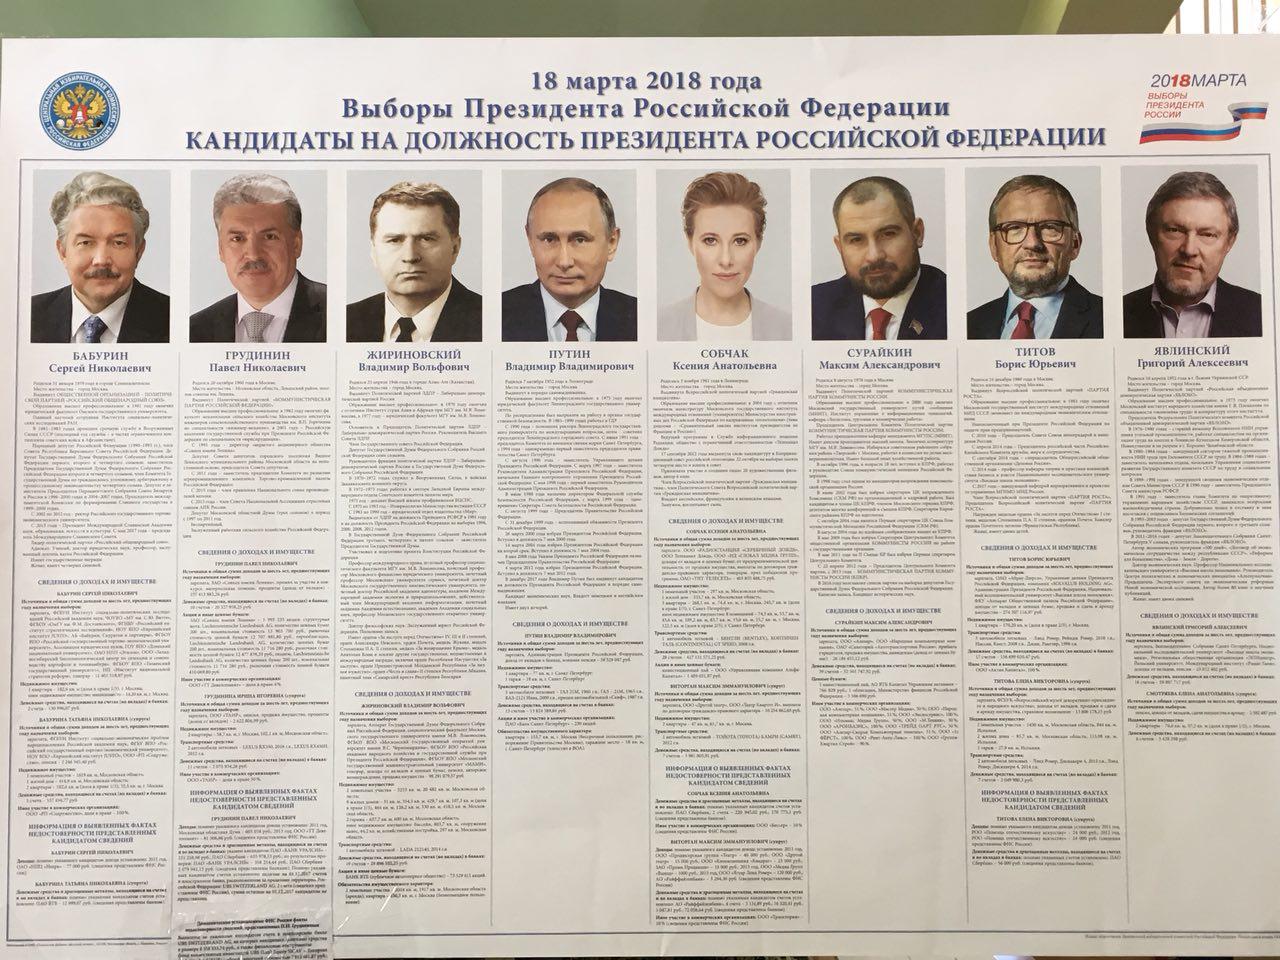 Результаты голосования выборов президента в 2024 году. Президентские выборы в России 2012 кандидаты.